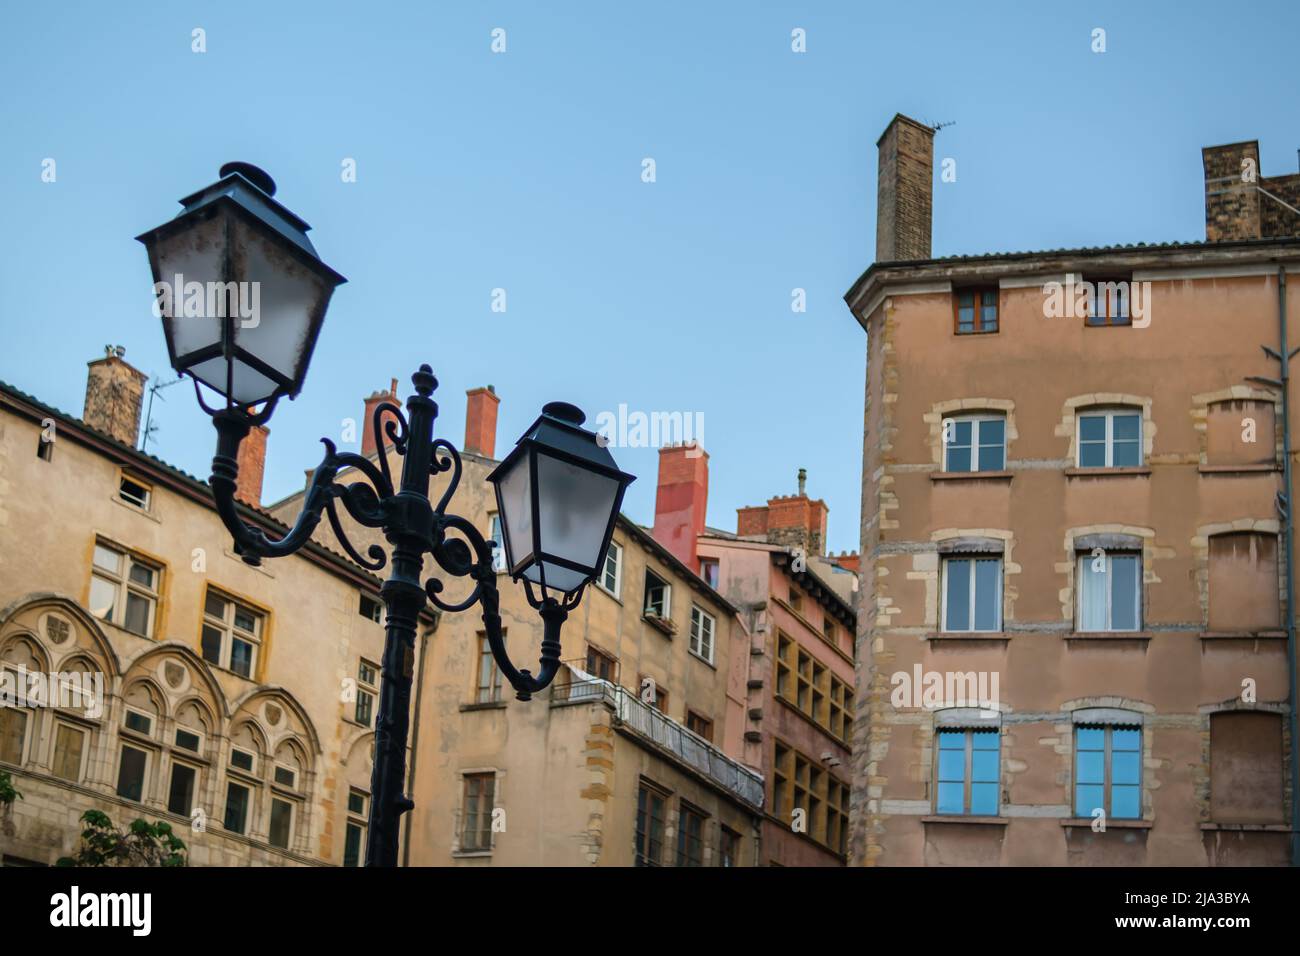 La pittoresca città vecchia di Lione con i suoi colorati edifici residenziali e lampione d'epoca Foto Stock